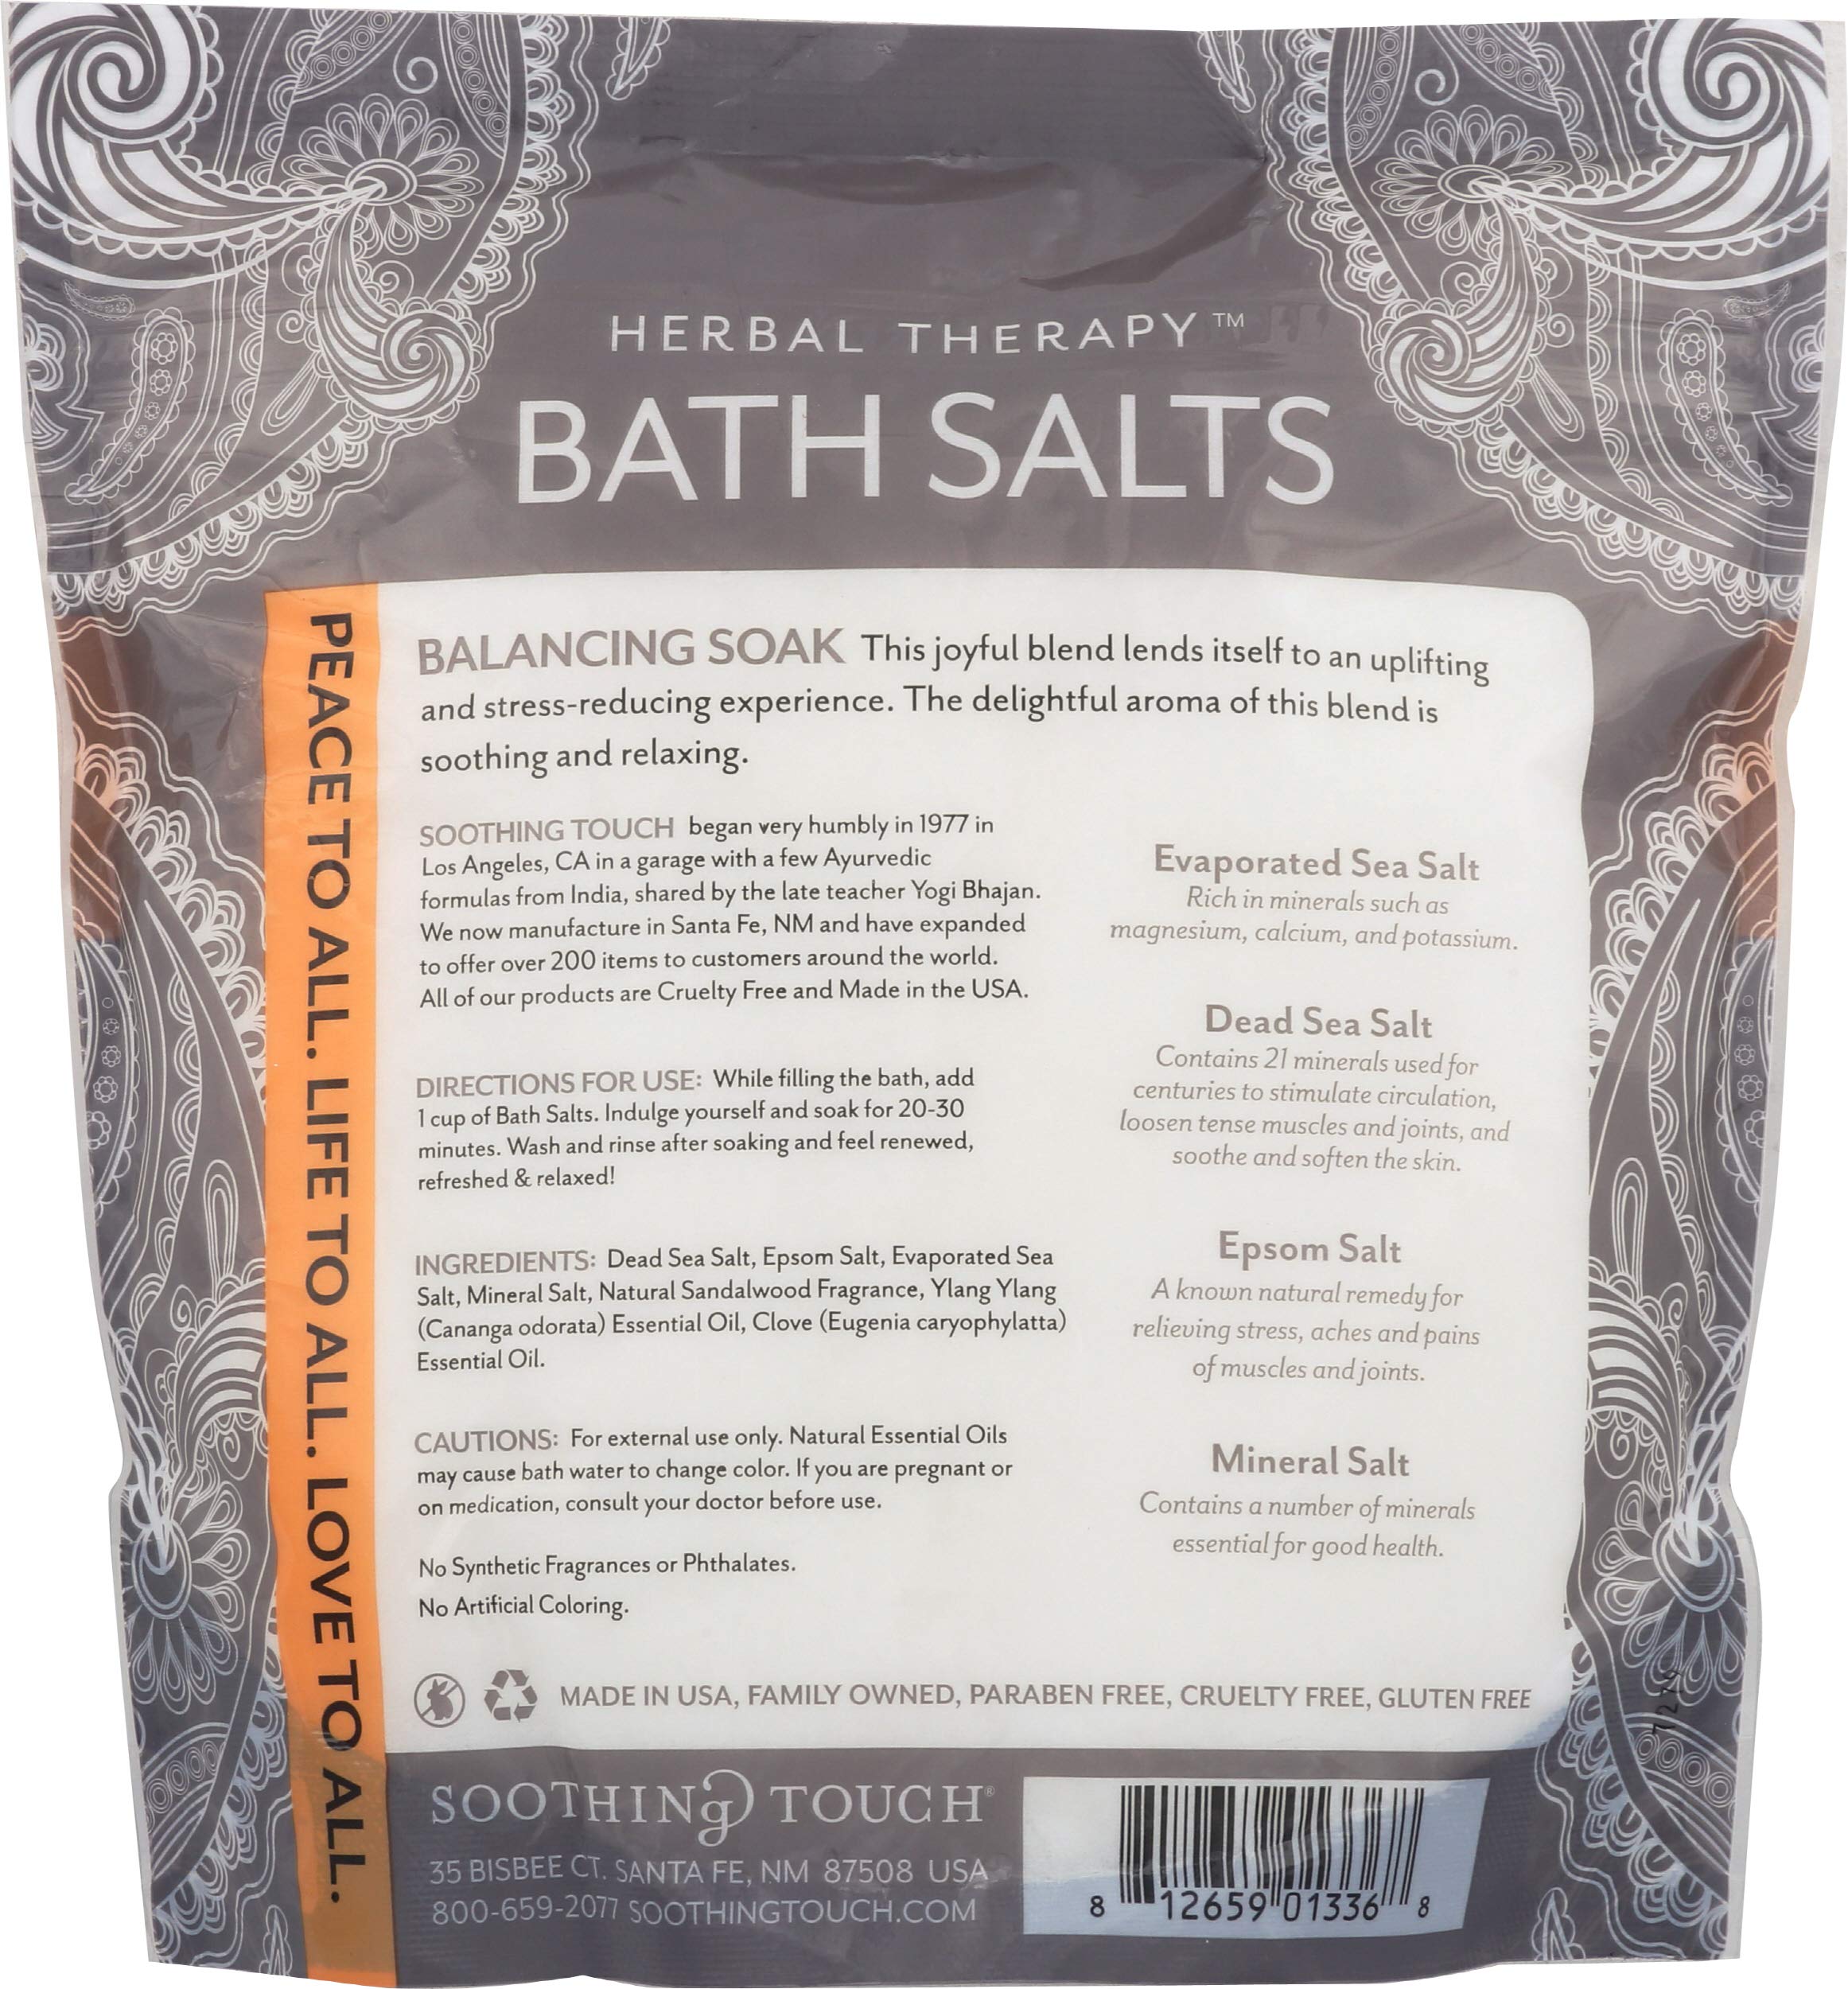 Soothing Touch Deep Sleep Bath Salts Balancing Soak Clove Sandalwood & Ylang, 32 Oz